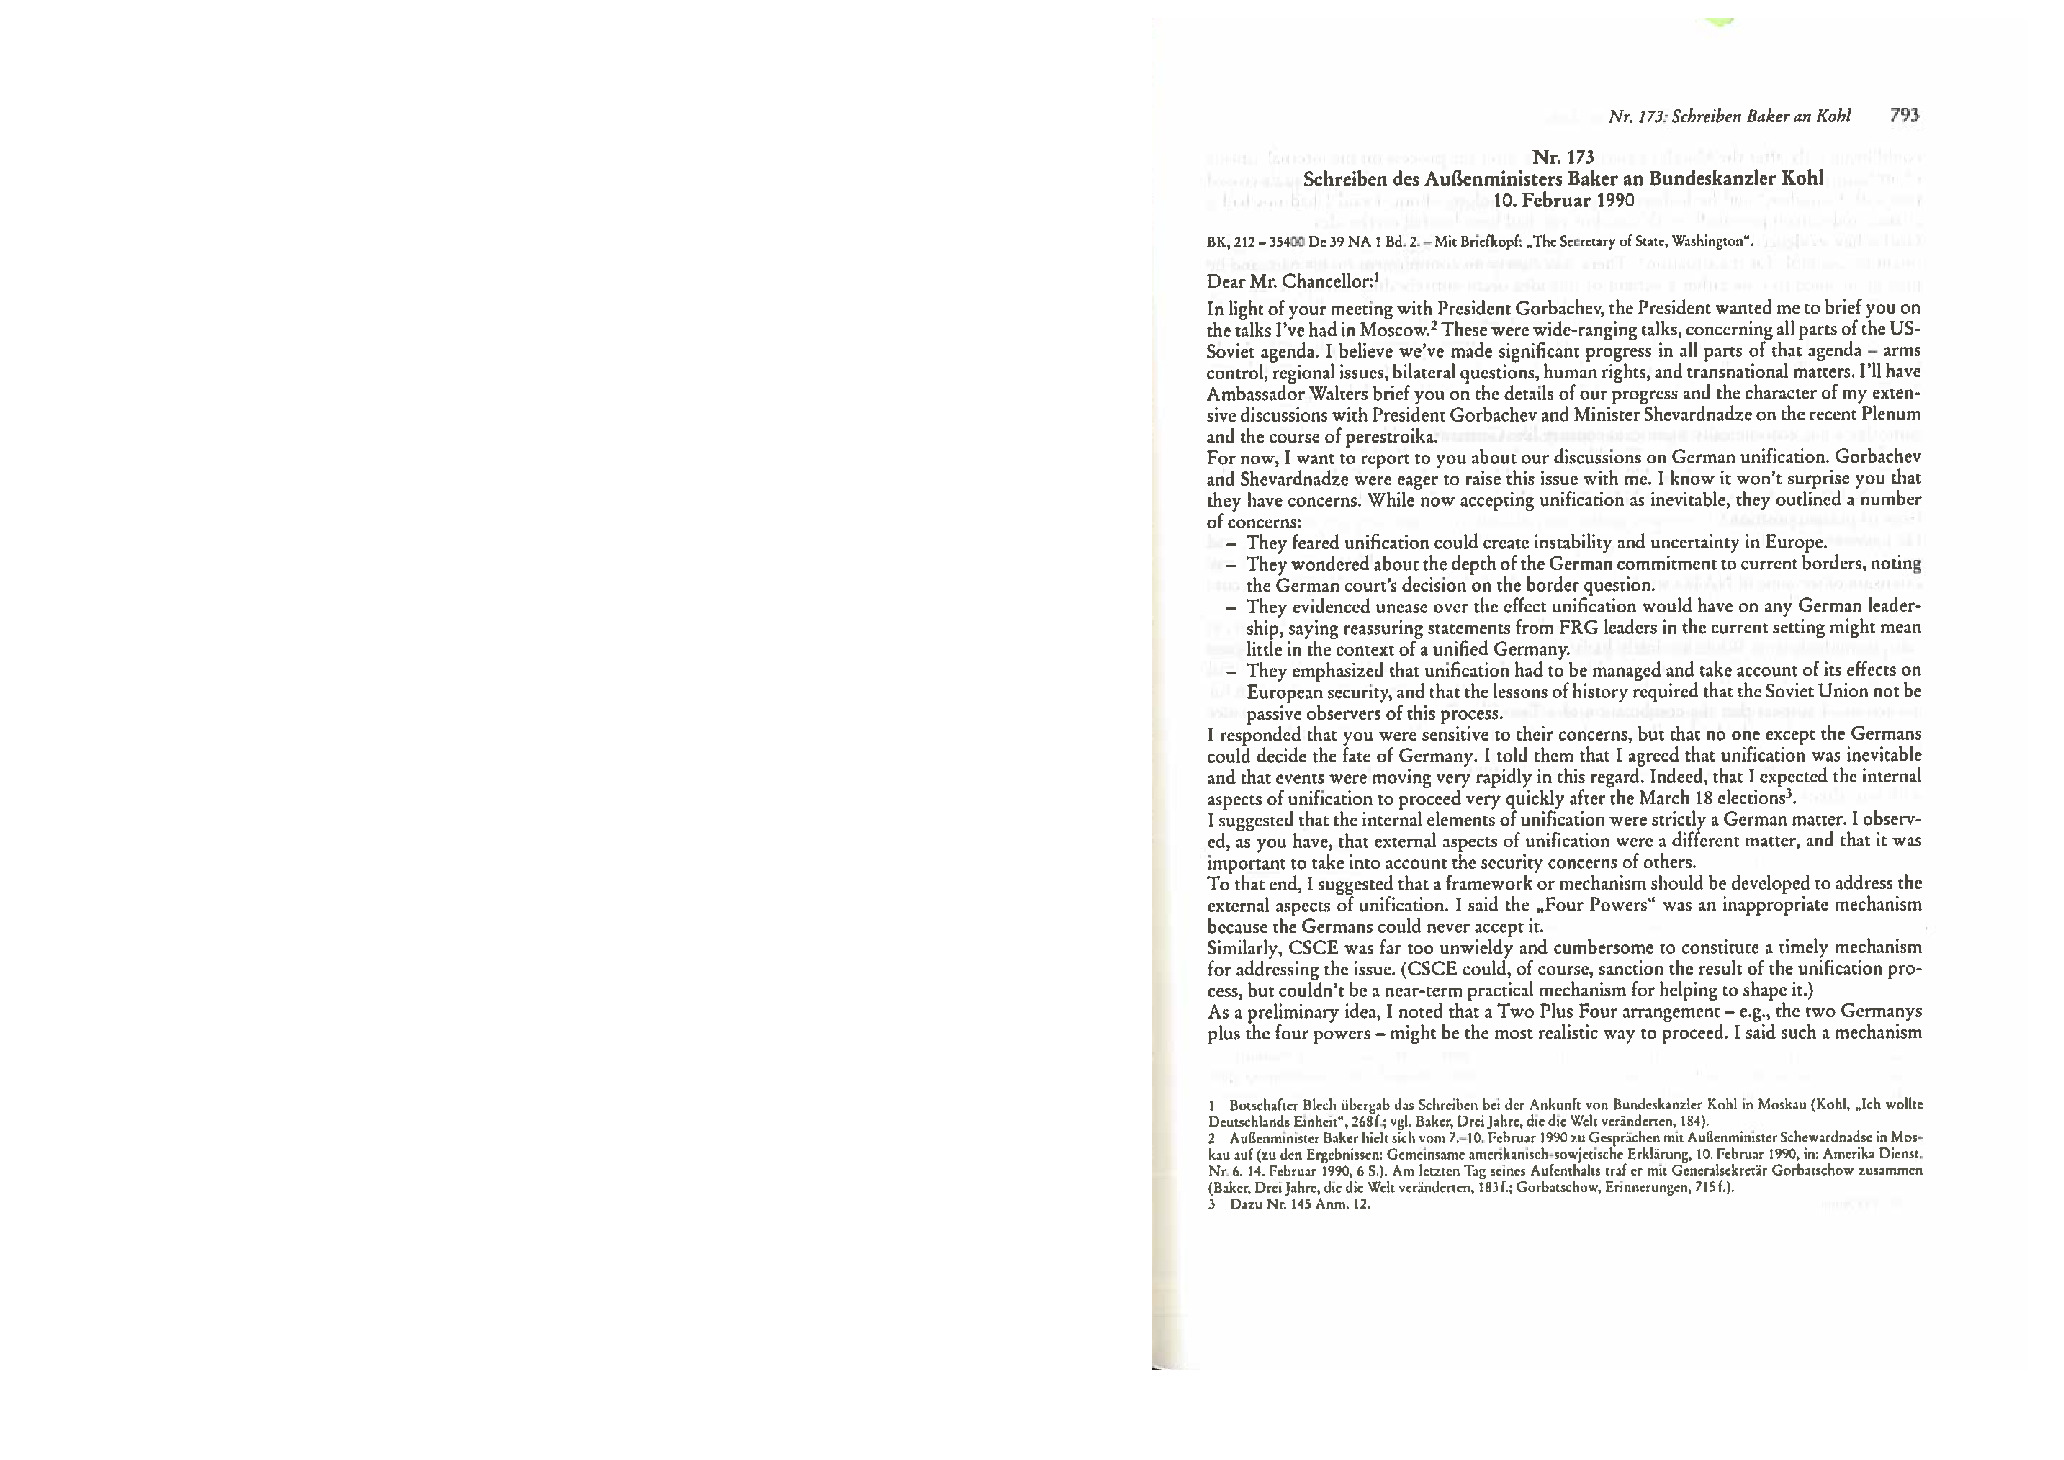 Document-08-Letter-from-James-Baker-to-Helmut-Kohl